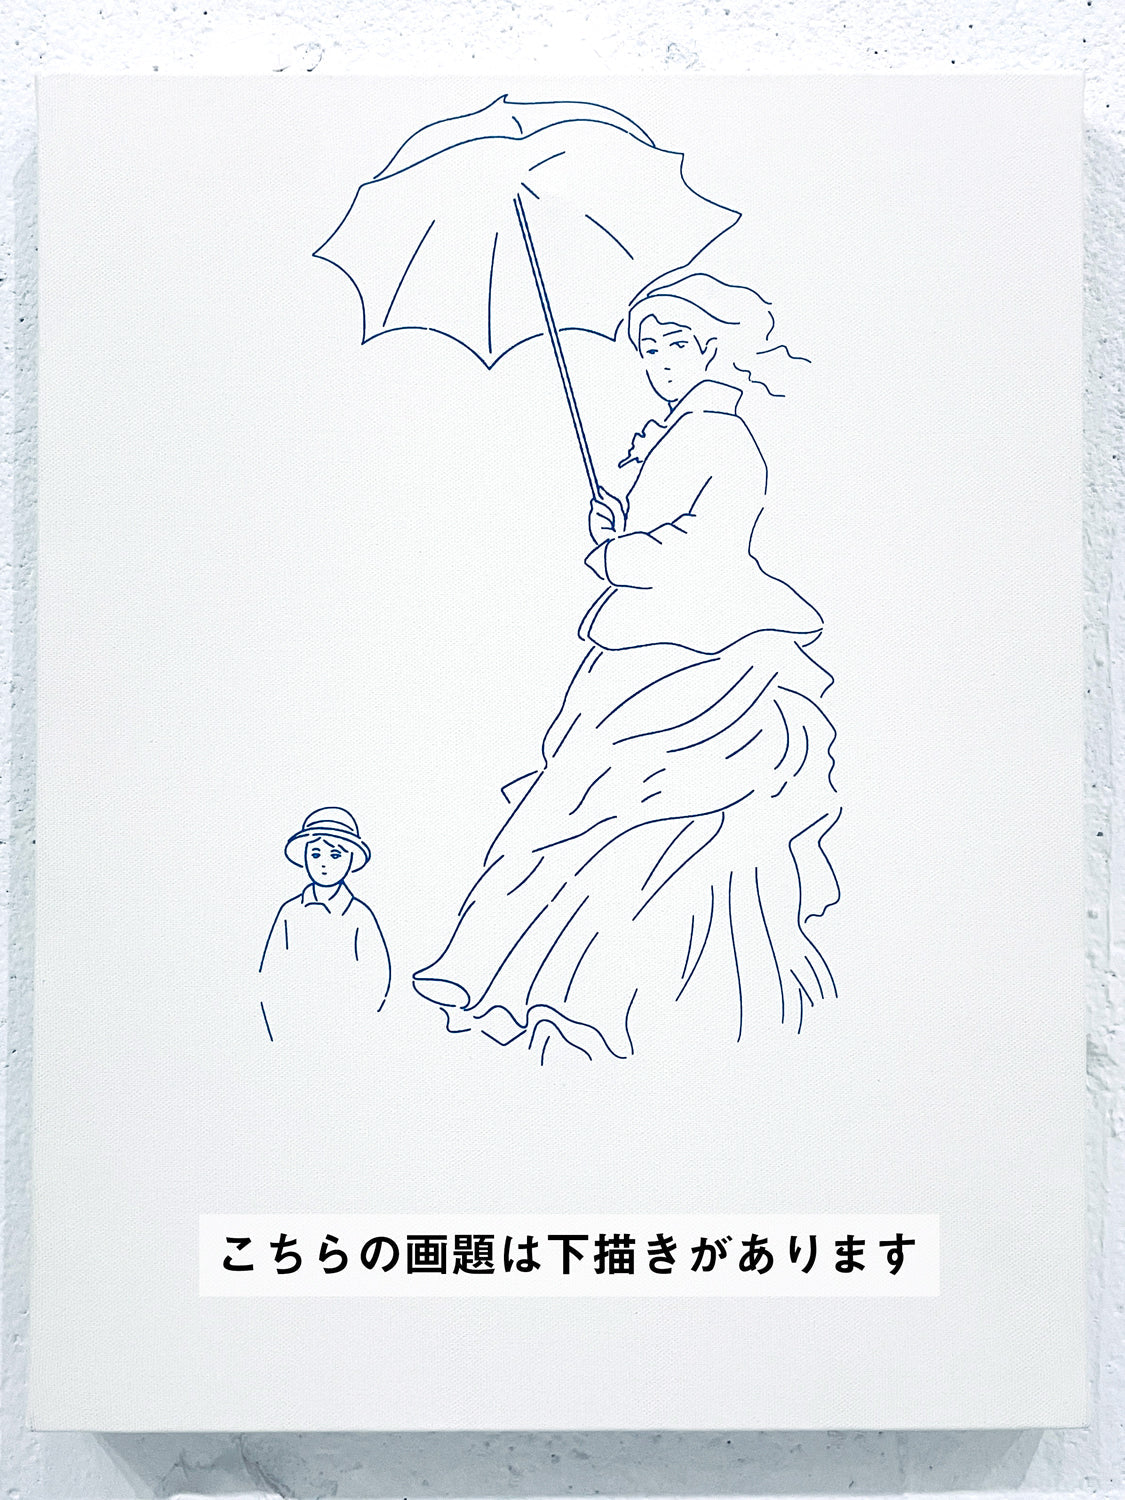 06月23日 (日) 14:00-17:00 | 日本橋 | クロード・モネ | 散歩、日傘をさす女性 (Woman with a Parasol by Claude Monet at Nihon-bashi)